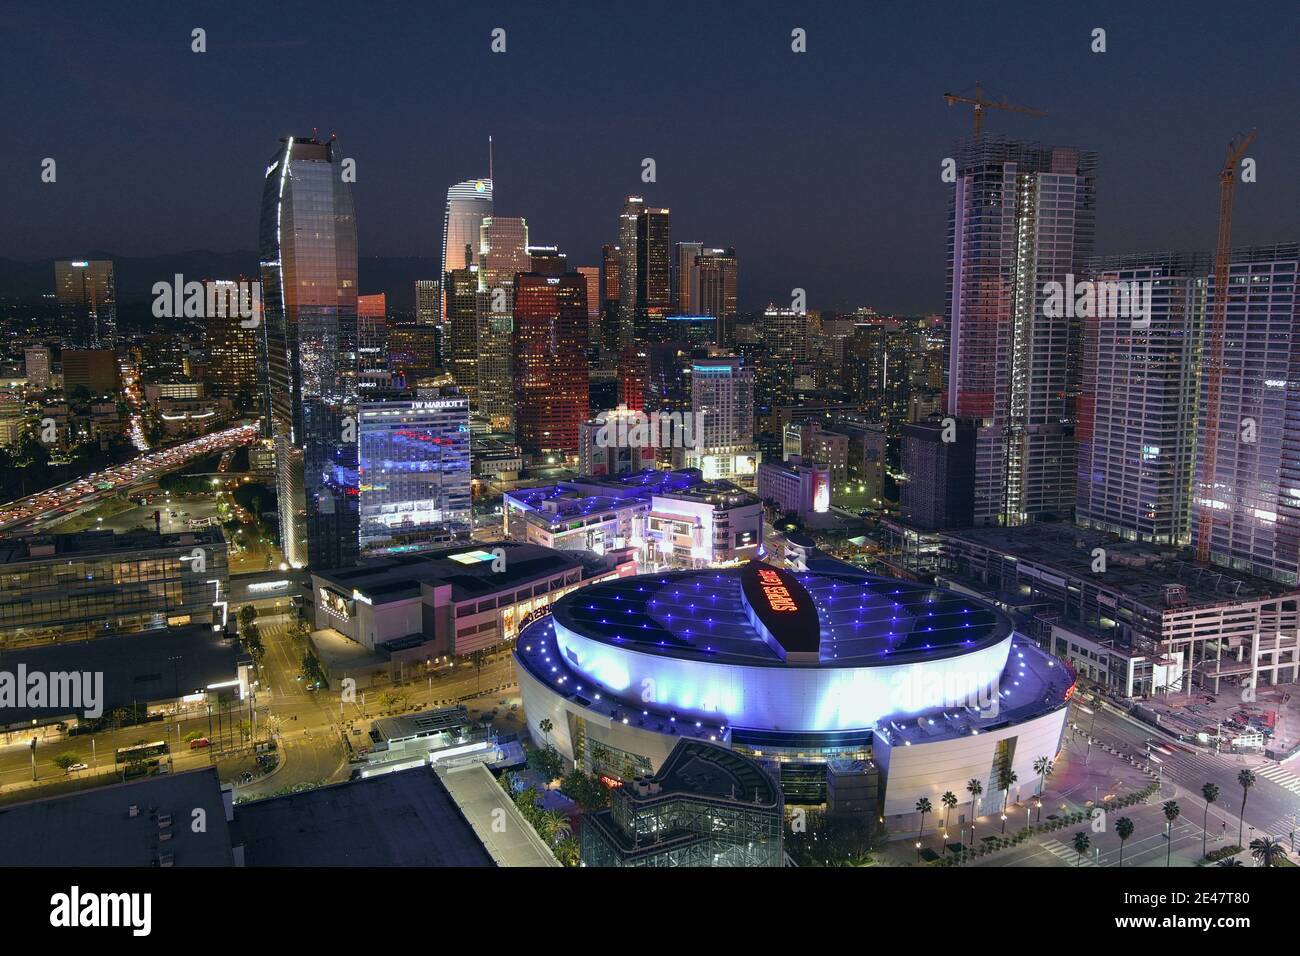 Vue aérienne du Staples Center et de la ville, jeudi 21 janvier 2021, à Los Angeles. L'aréna est le stade des Los Angeles Lakers an Banque D'Images